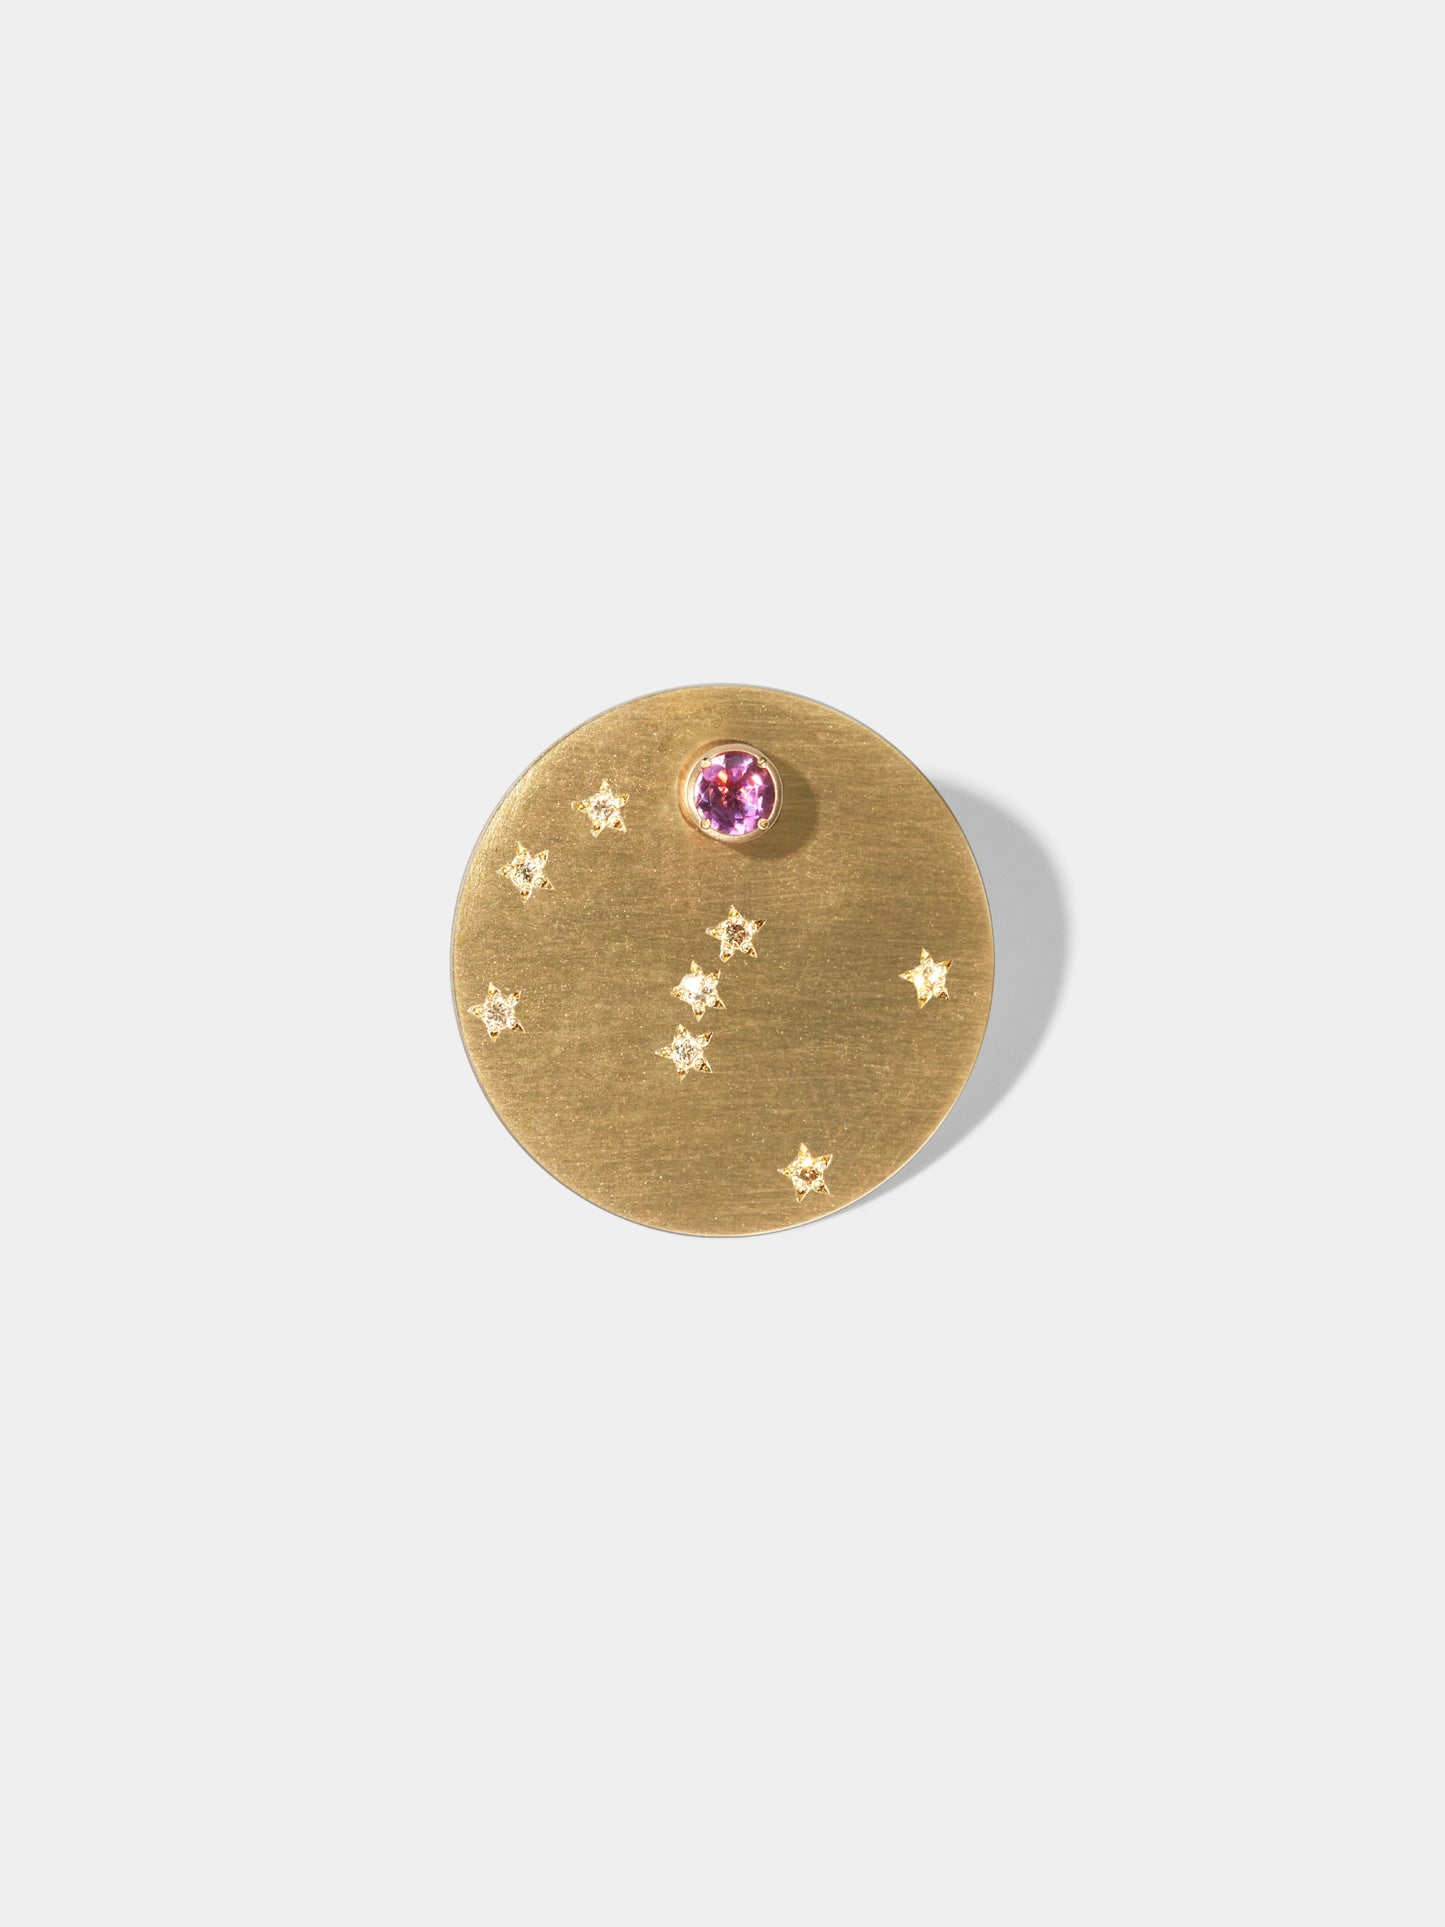 ASTERISM_Pierced Earring_Orion(オリオン座) / Pink Tourmaline